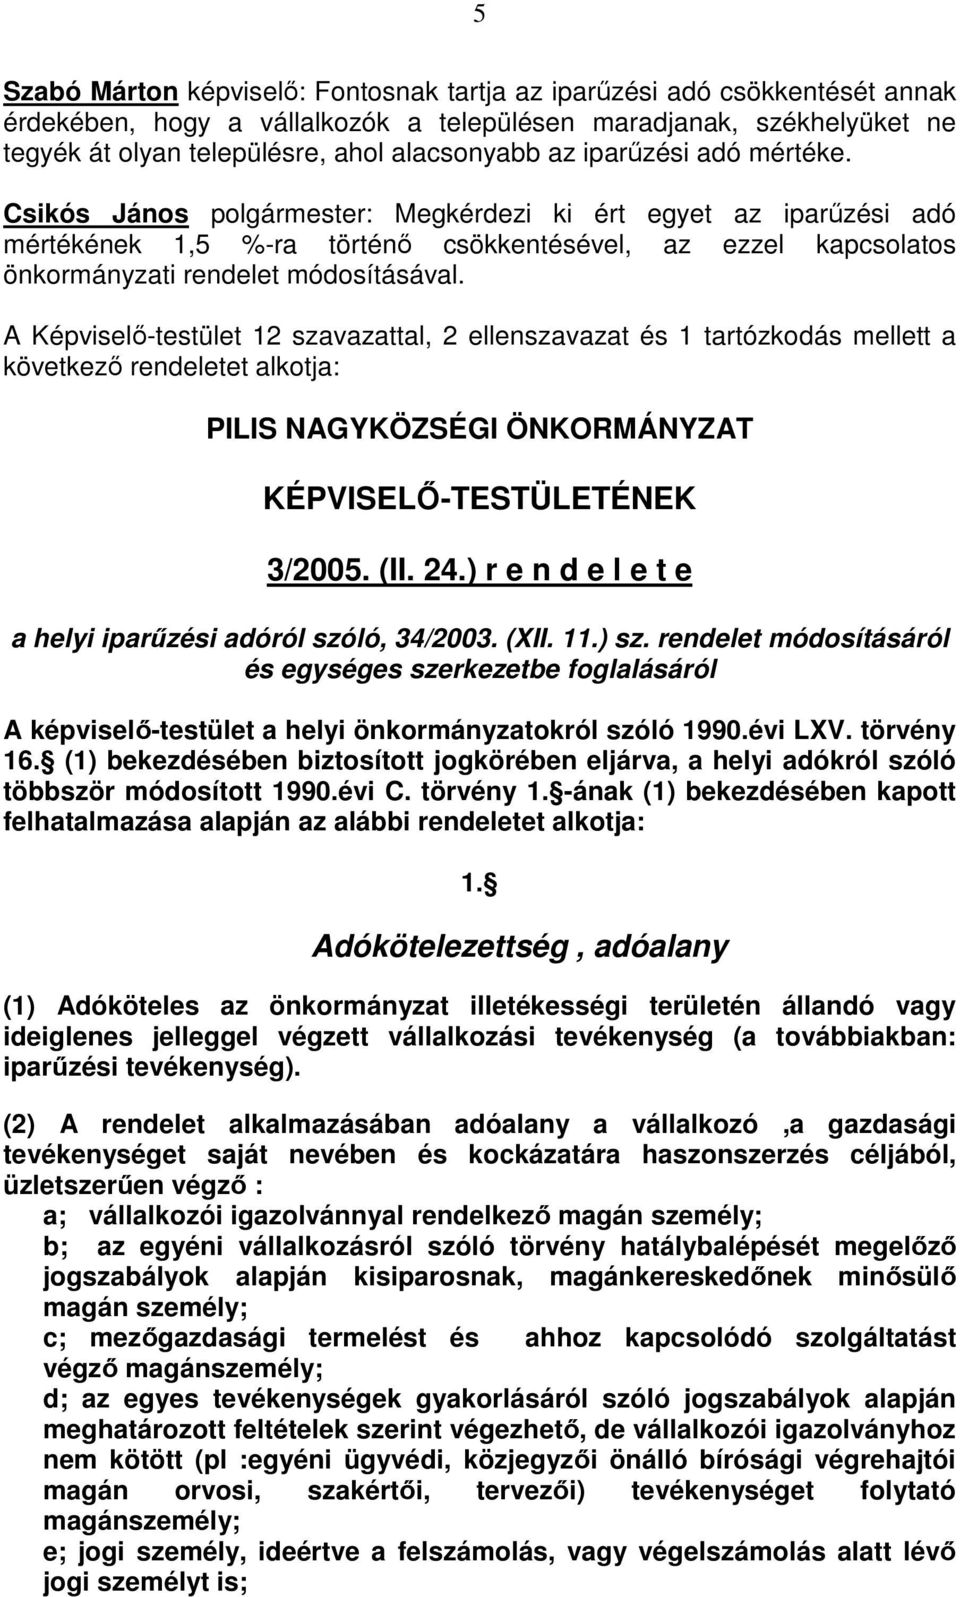 A Képviselı-testület 12 szavazattal, 2 ellenszavazat és 1 tartózkodás mellett a következı rendeletet alkotja: PILIS NAGYKÖZSÉGI ÖNKORMÁNYZAT KÉPVISELİ-TESTÜLETÉNEK 3/2005. (II. 24.